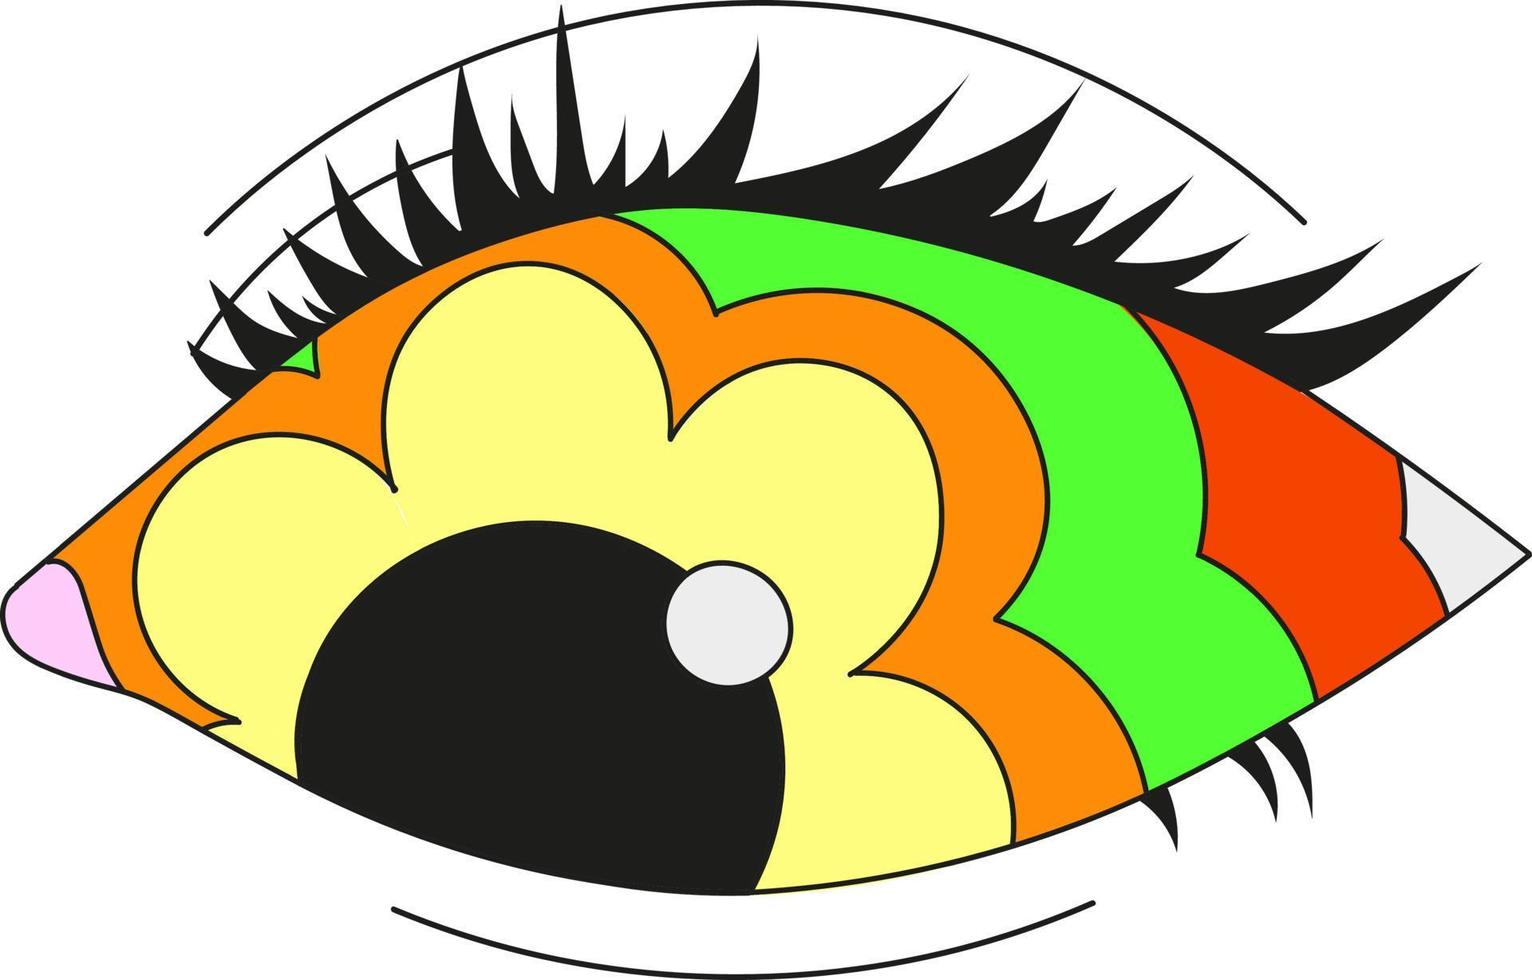 ett psykedeliskt flerfärgat öga med en blomma pupill. vektor illustration isolerad på en vit bakgrund.